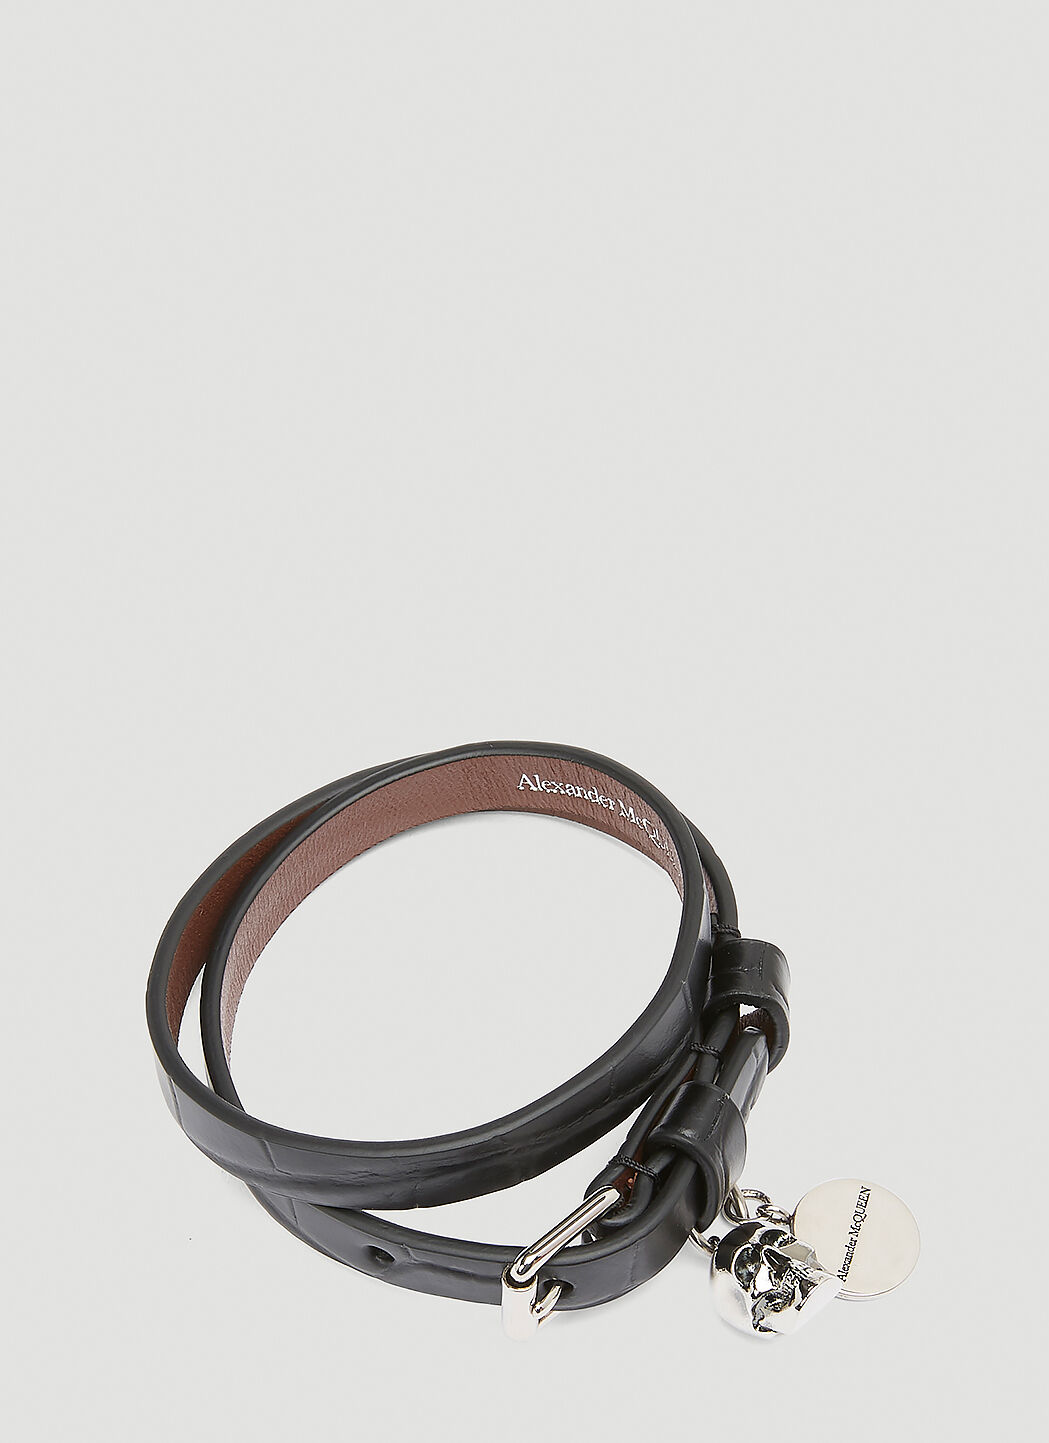 Alexander McQueen ダブルラップ レザーブレスレット ブラック amq0143011